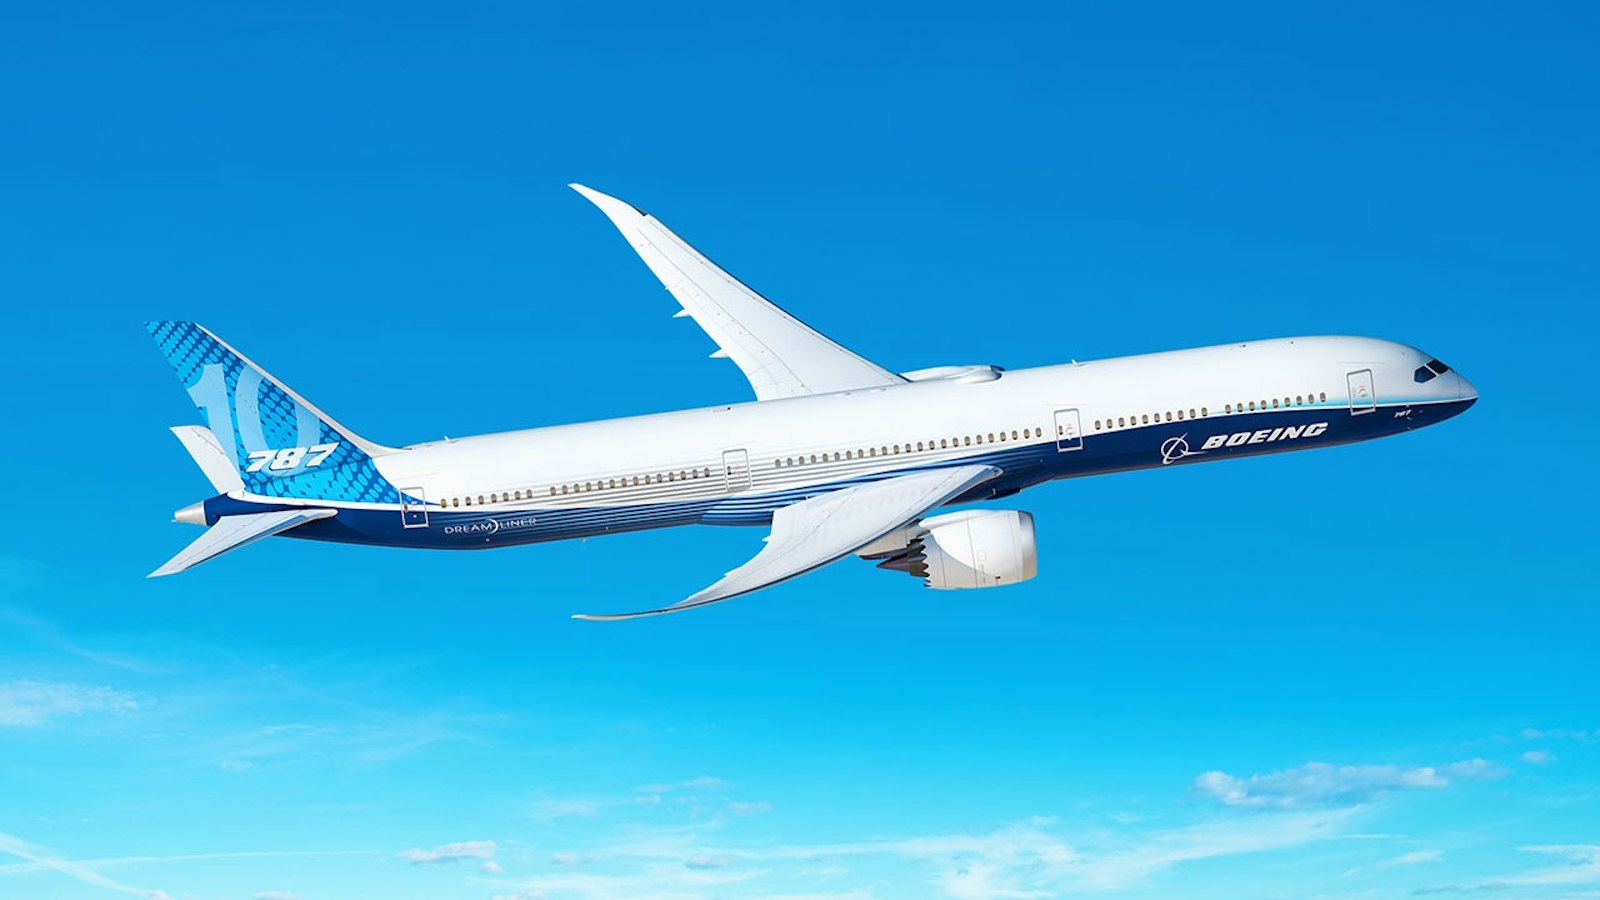 Le 787 Dreamliner est l’un des bestsellers de Boeing.© Boeing